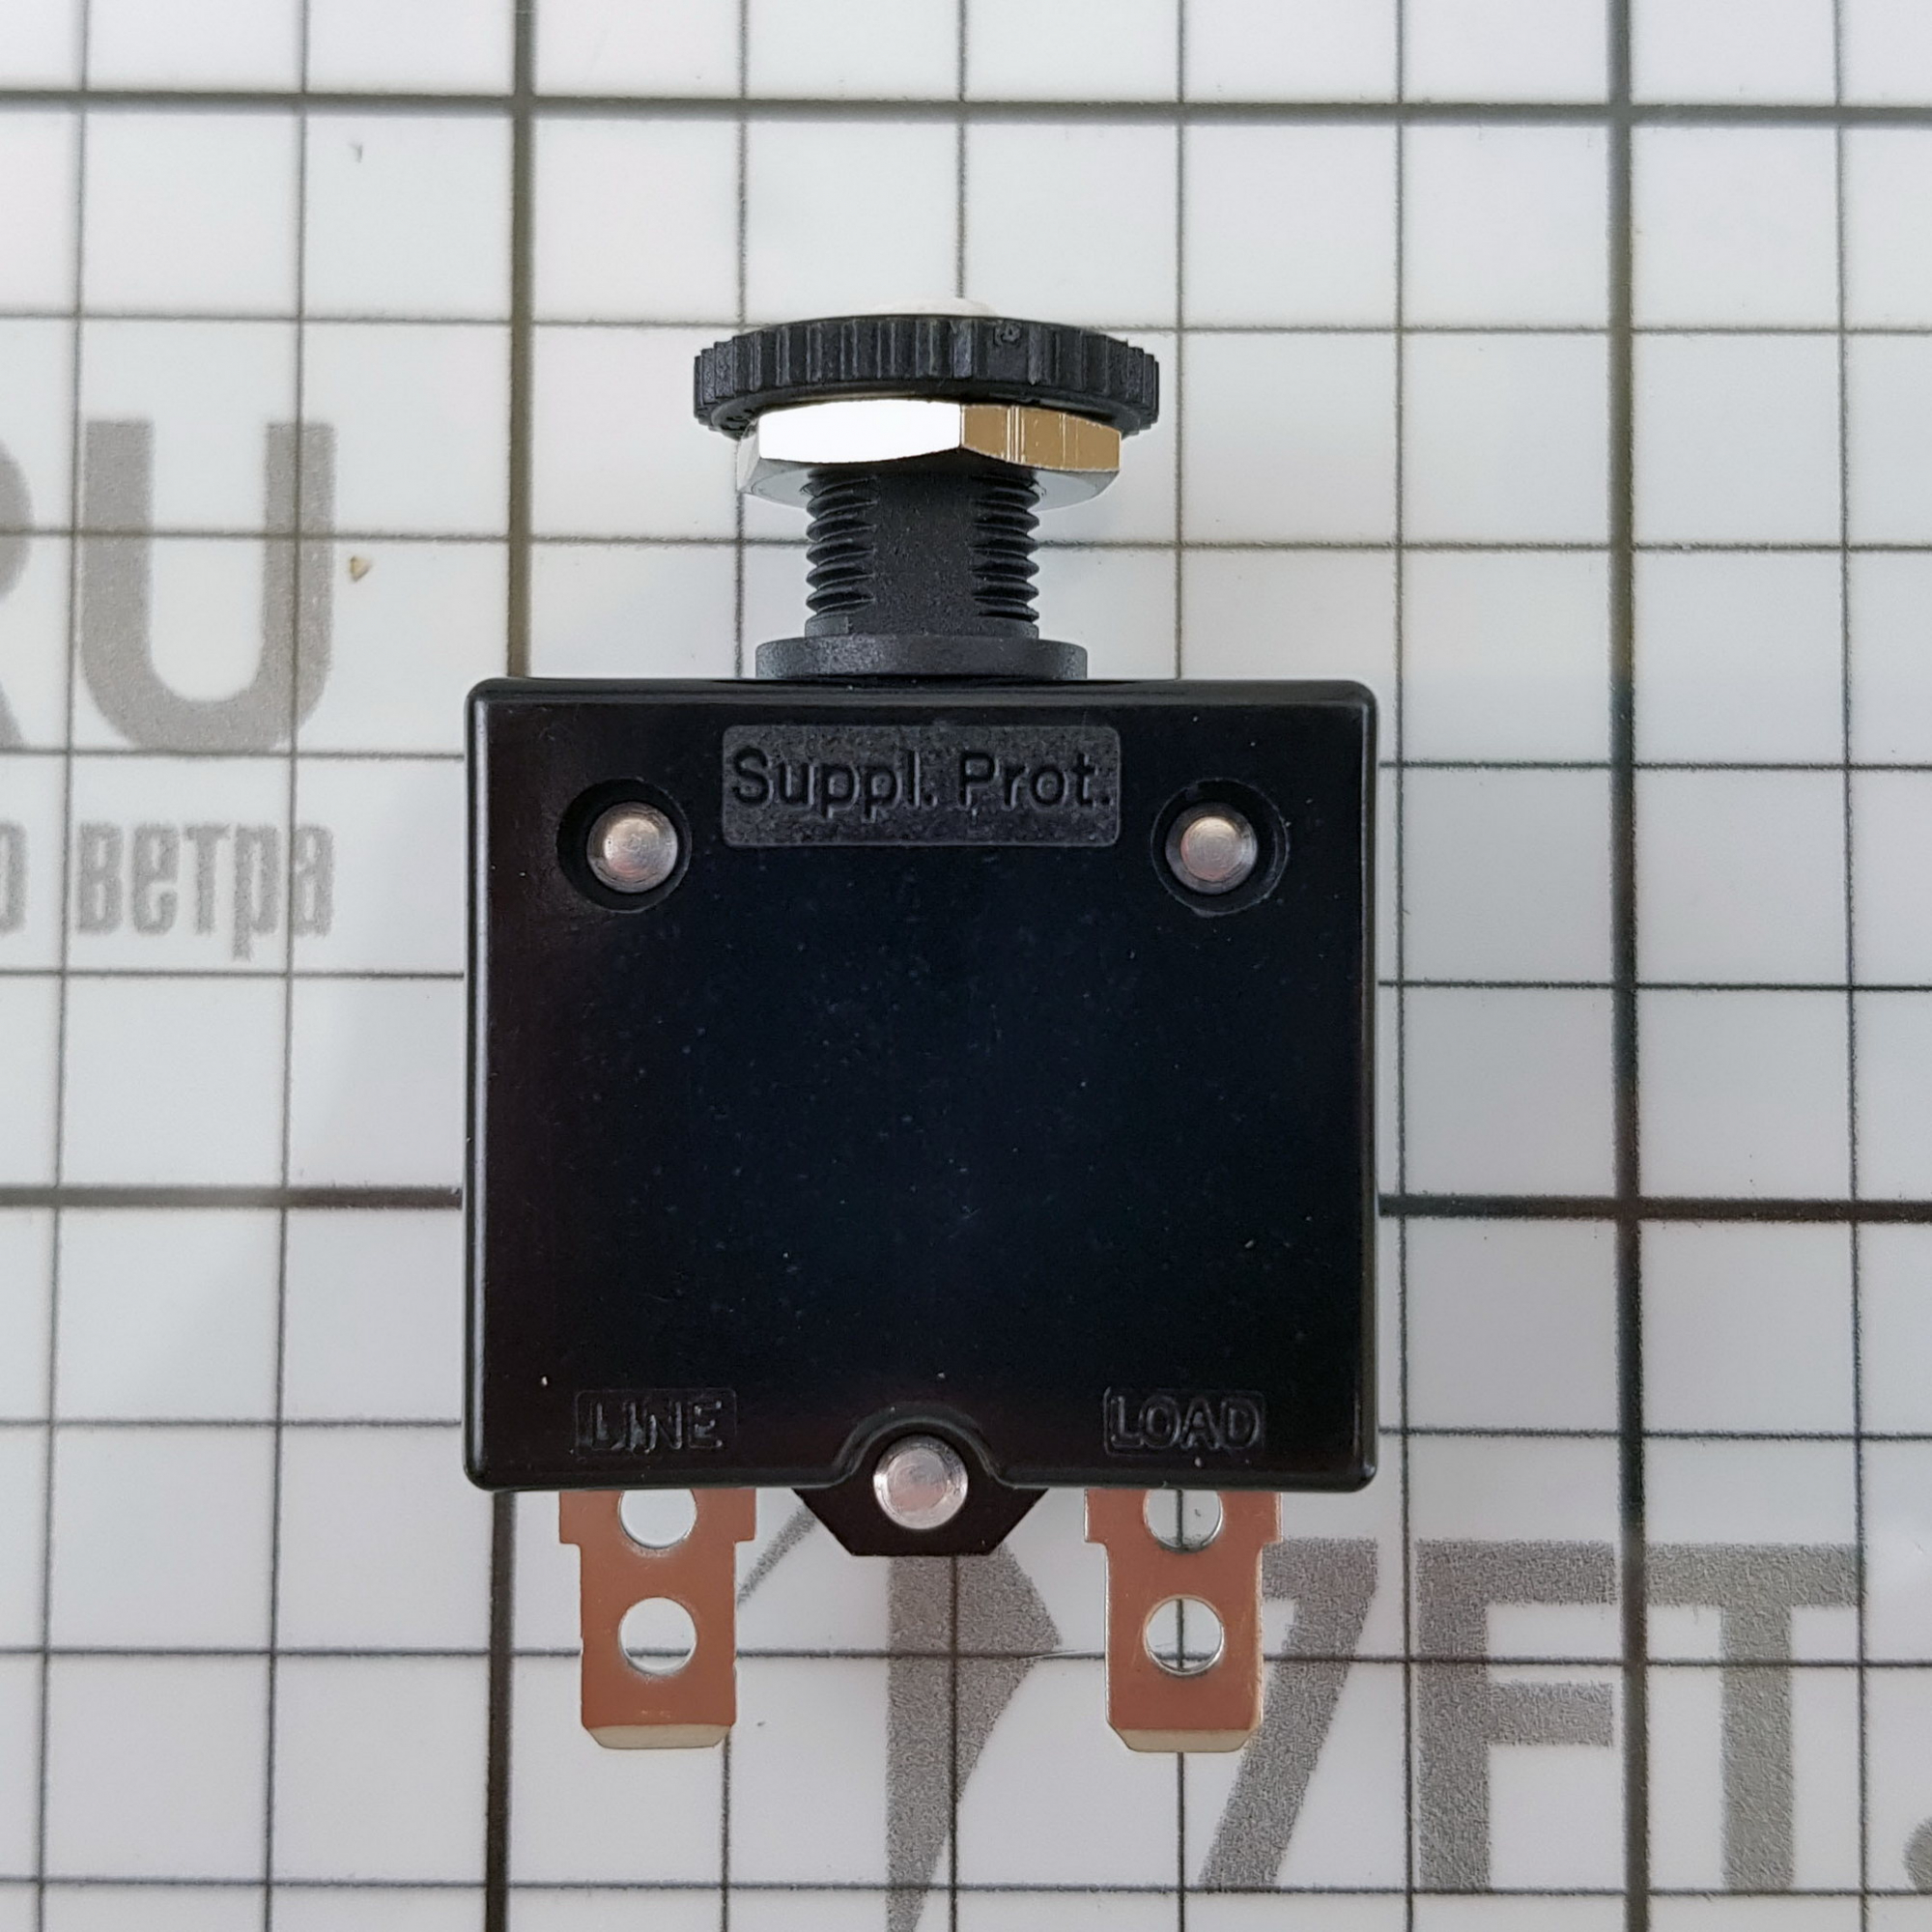 Купить Автоматический выключатель кнопочный неотключаемый Blue Sea CLB 7052 32В 5А быстрого монтаж 7ft.ru в интернет магазине Семь Футов